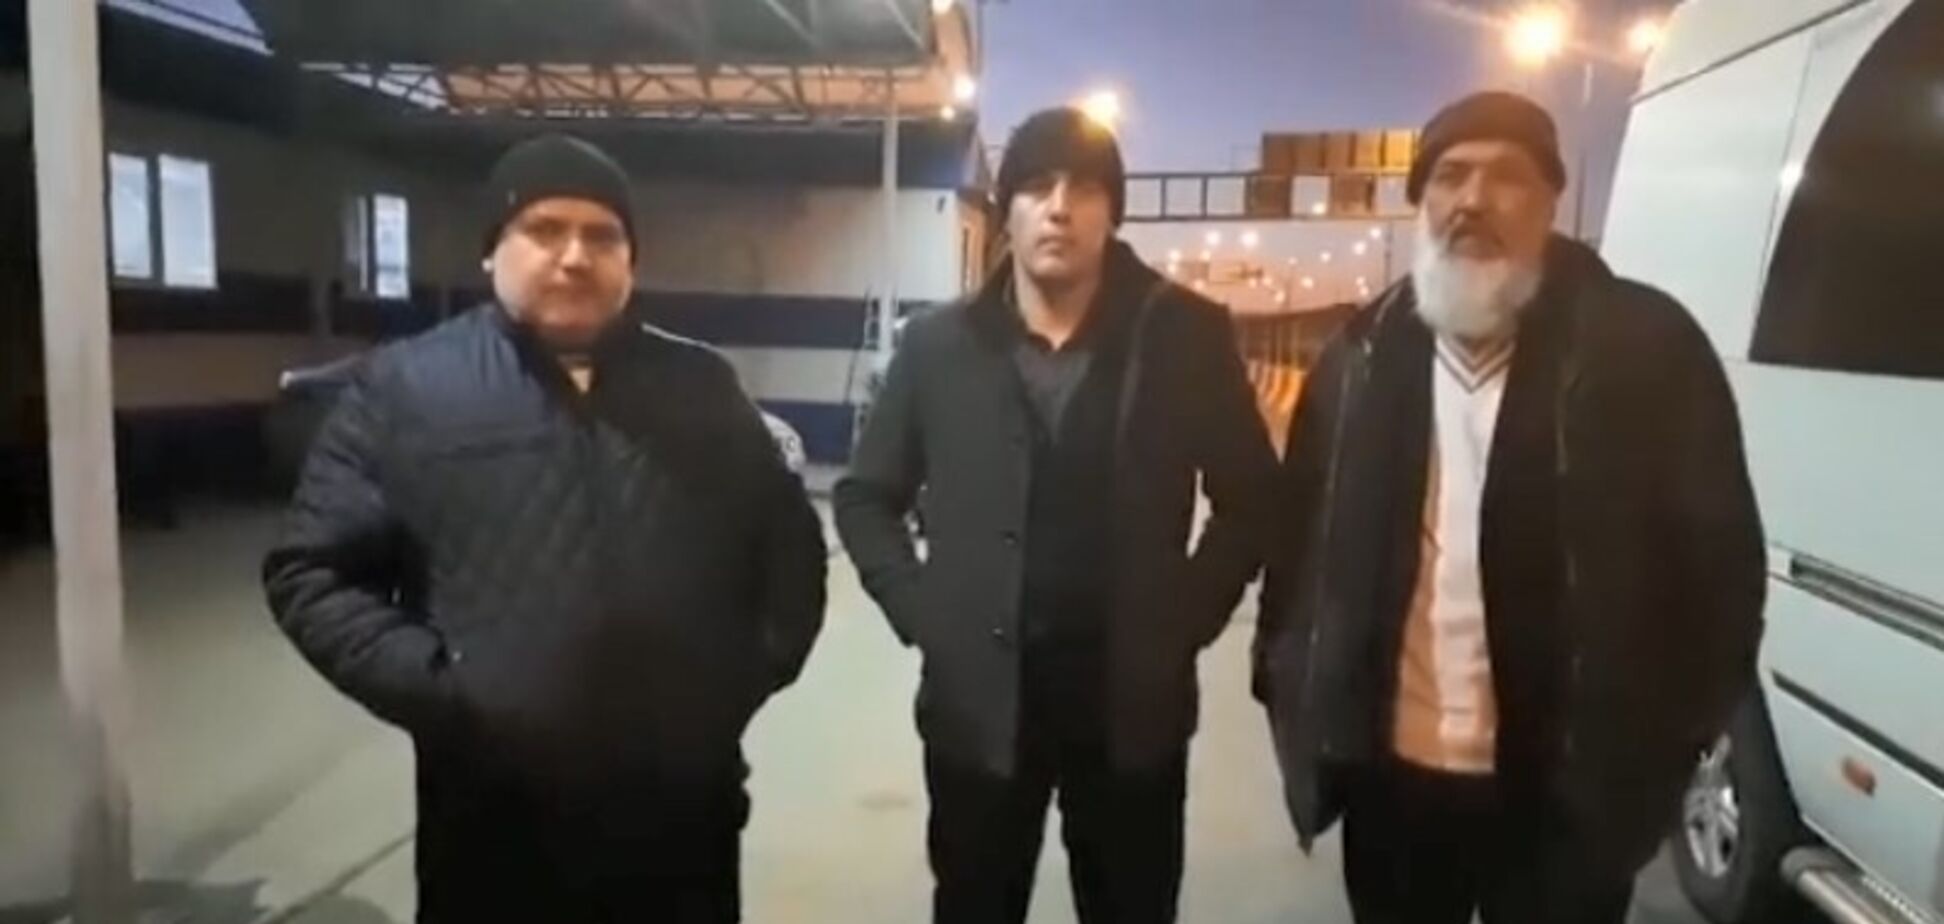 Забрали паспорта: российская полиция задержала троих крымских татар